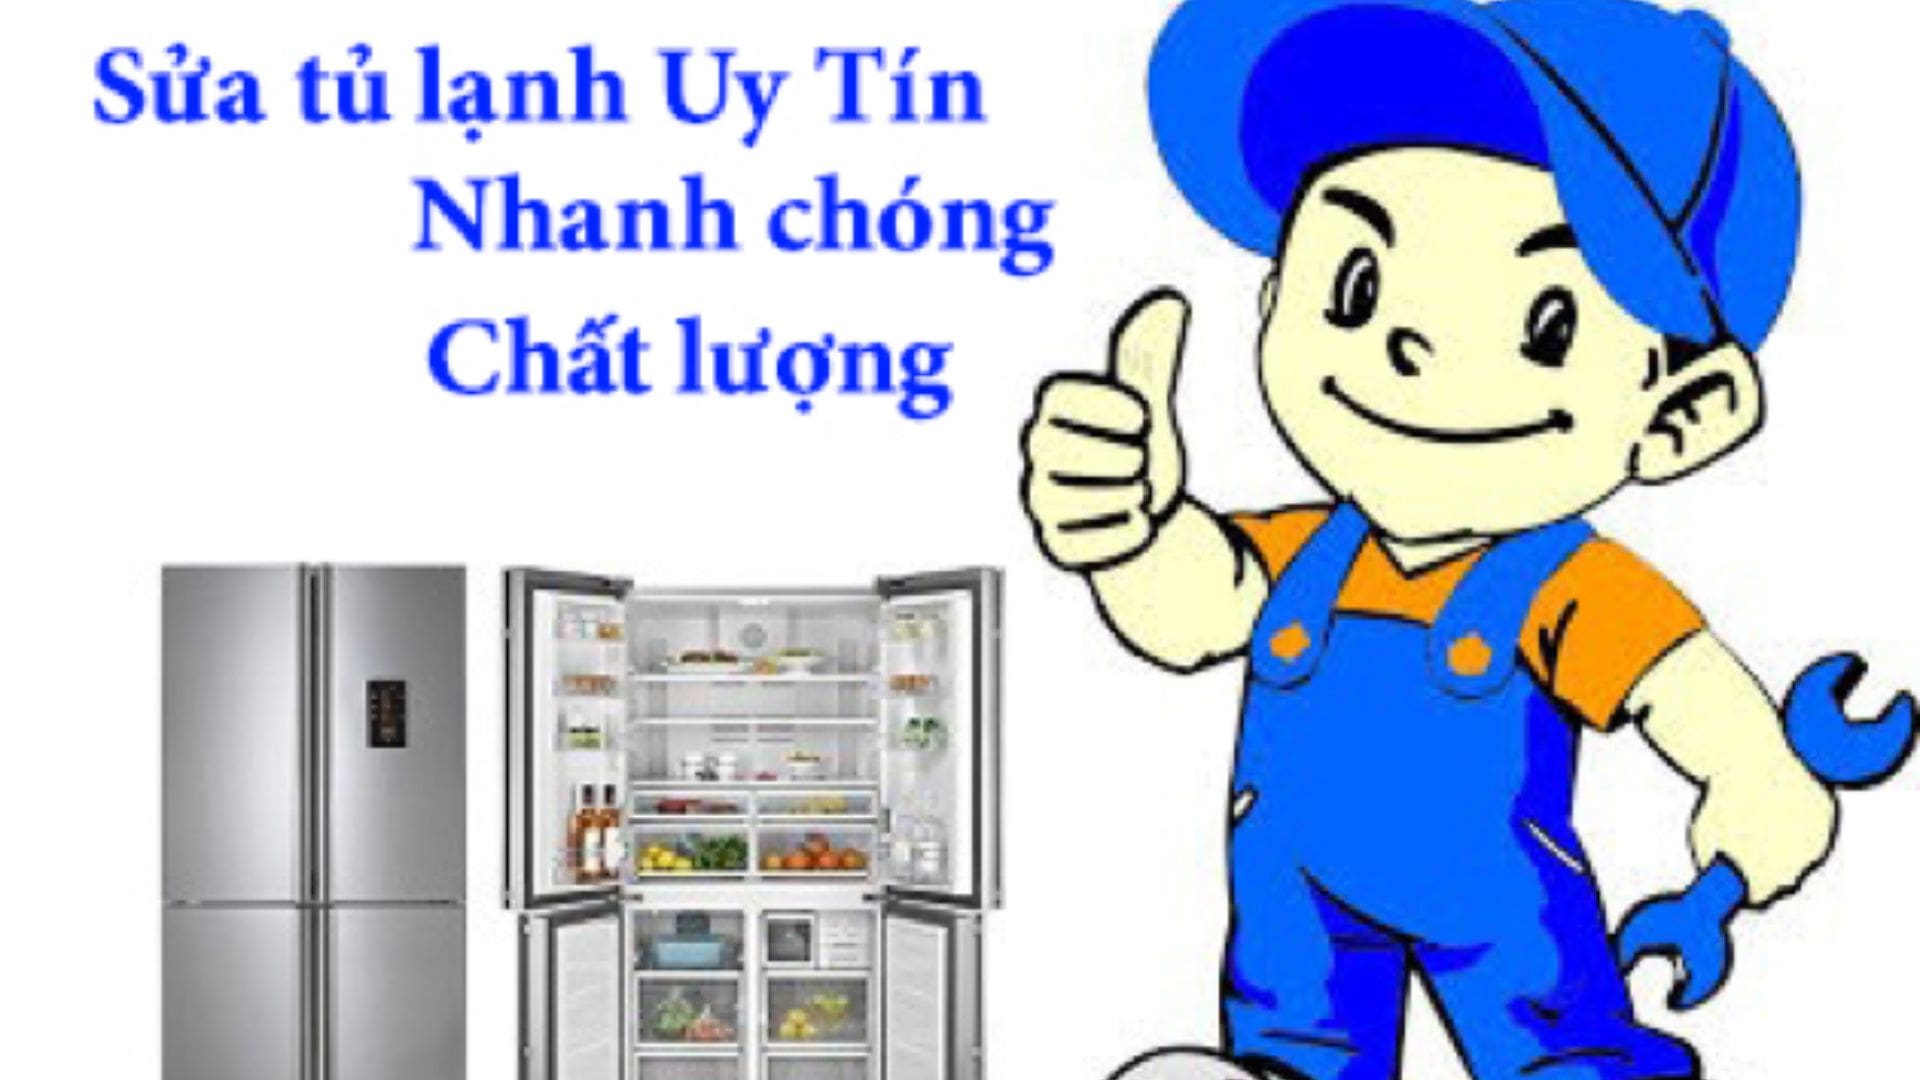 Dịch Vụ Đức Tín - Công Ty sửa tủ lạnh tại Đà Nẵng uy tín